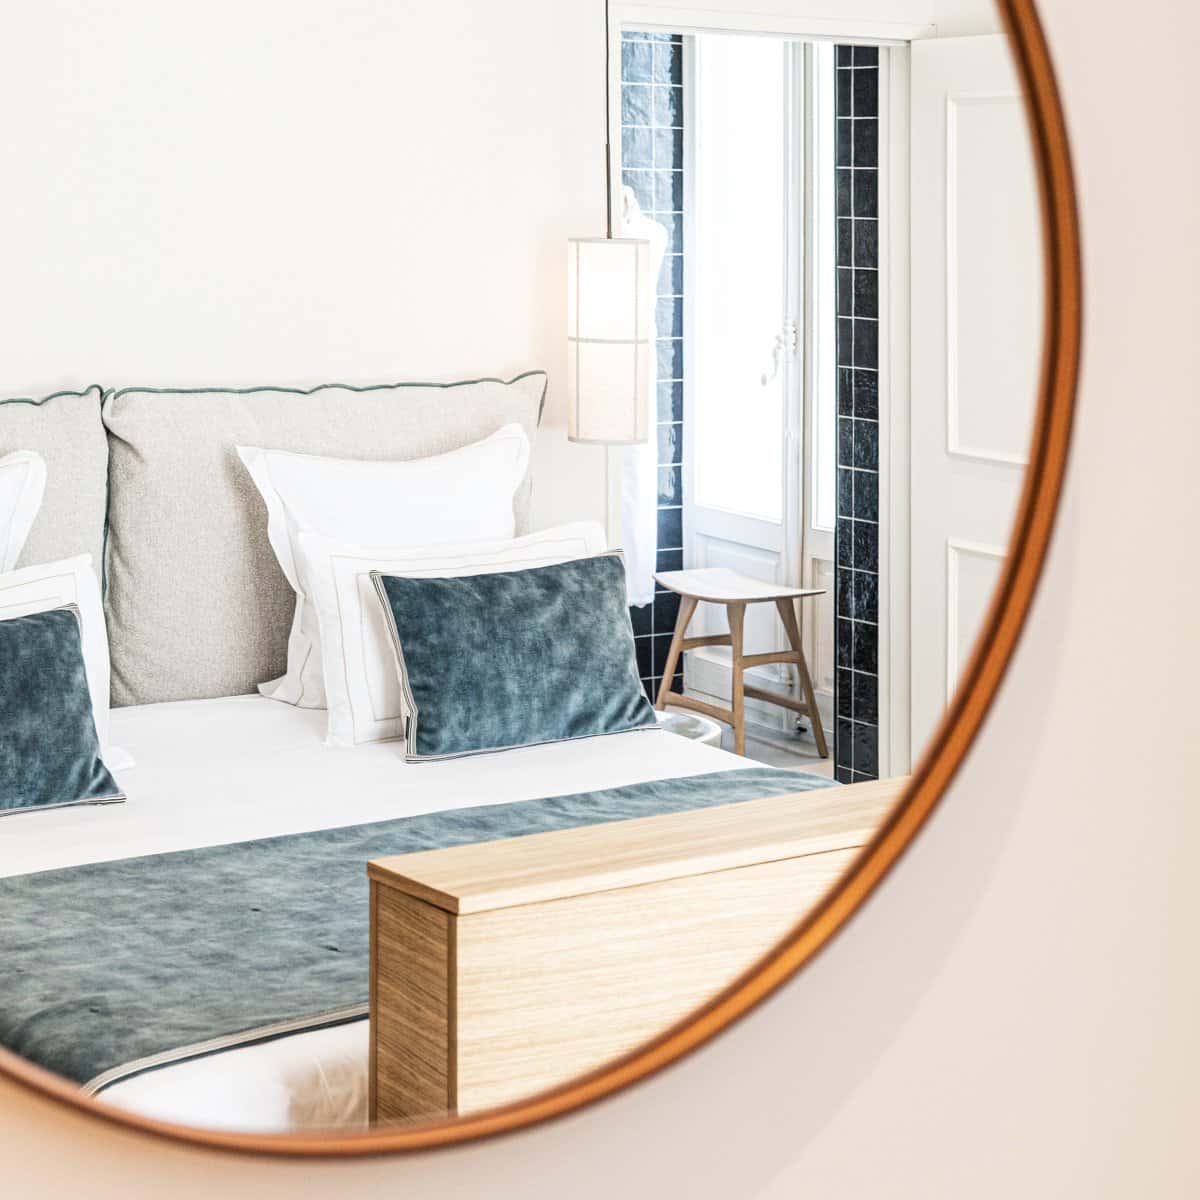 Gros plan sur le lit bleu et le miroir dans une chambre double deluxe de l'Hôtel Le Mosaïque, détails soignés et élégants.